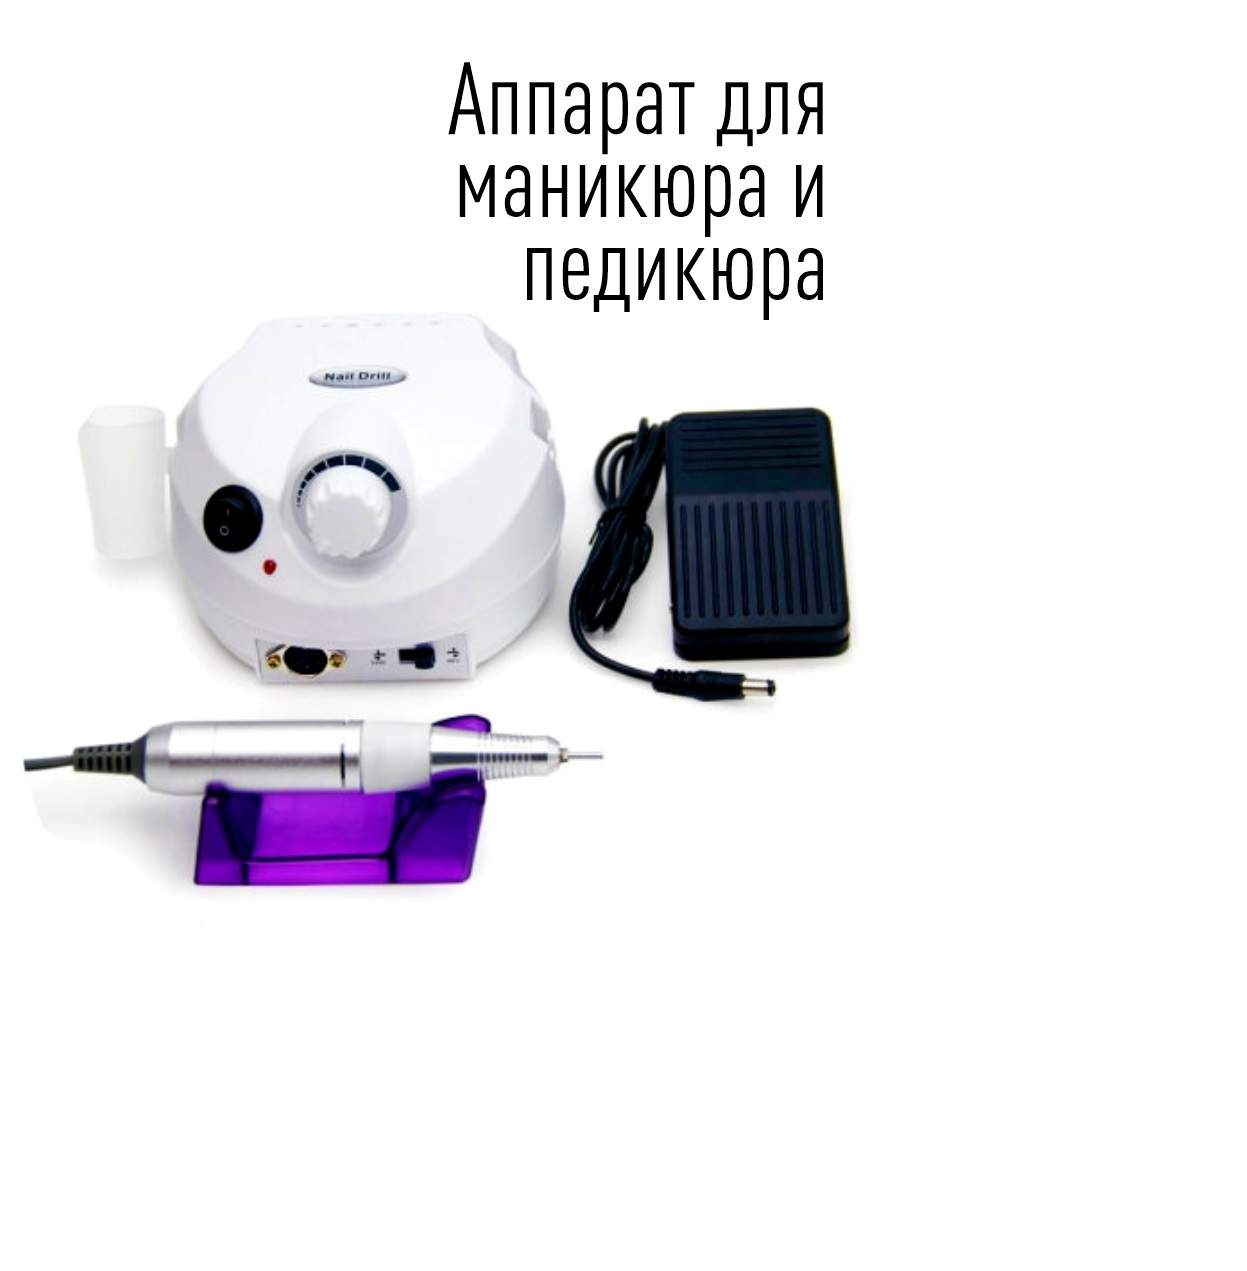 Купить аппараты для педикюра в интернет магазине instgeocult.ru